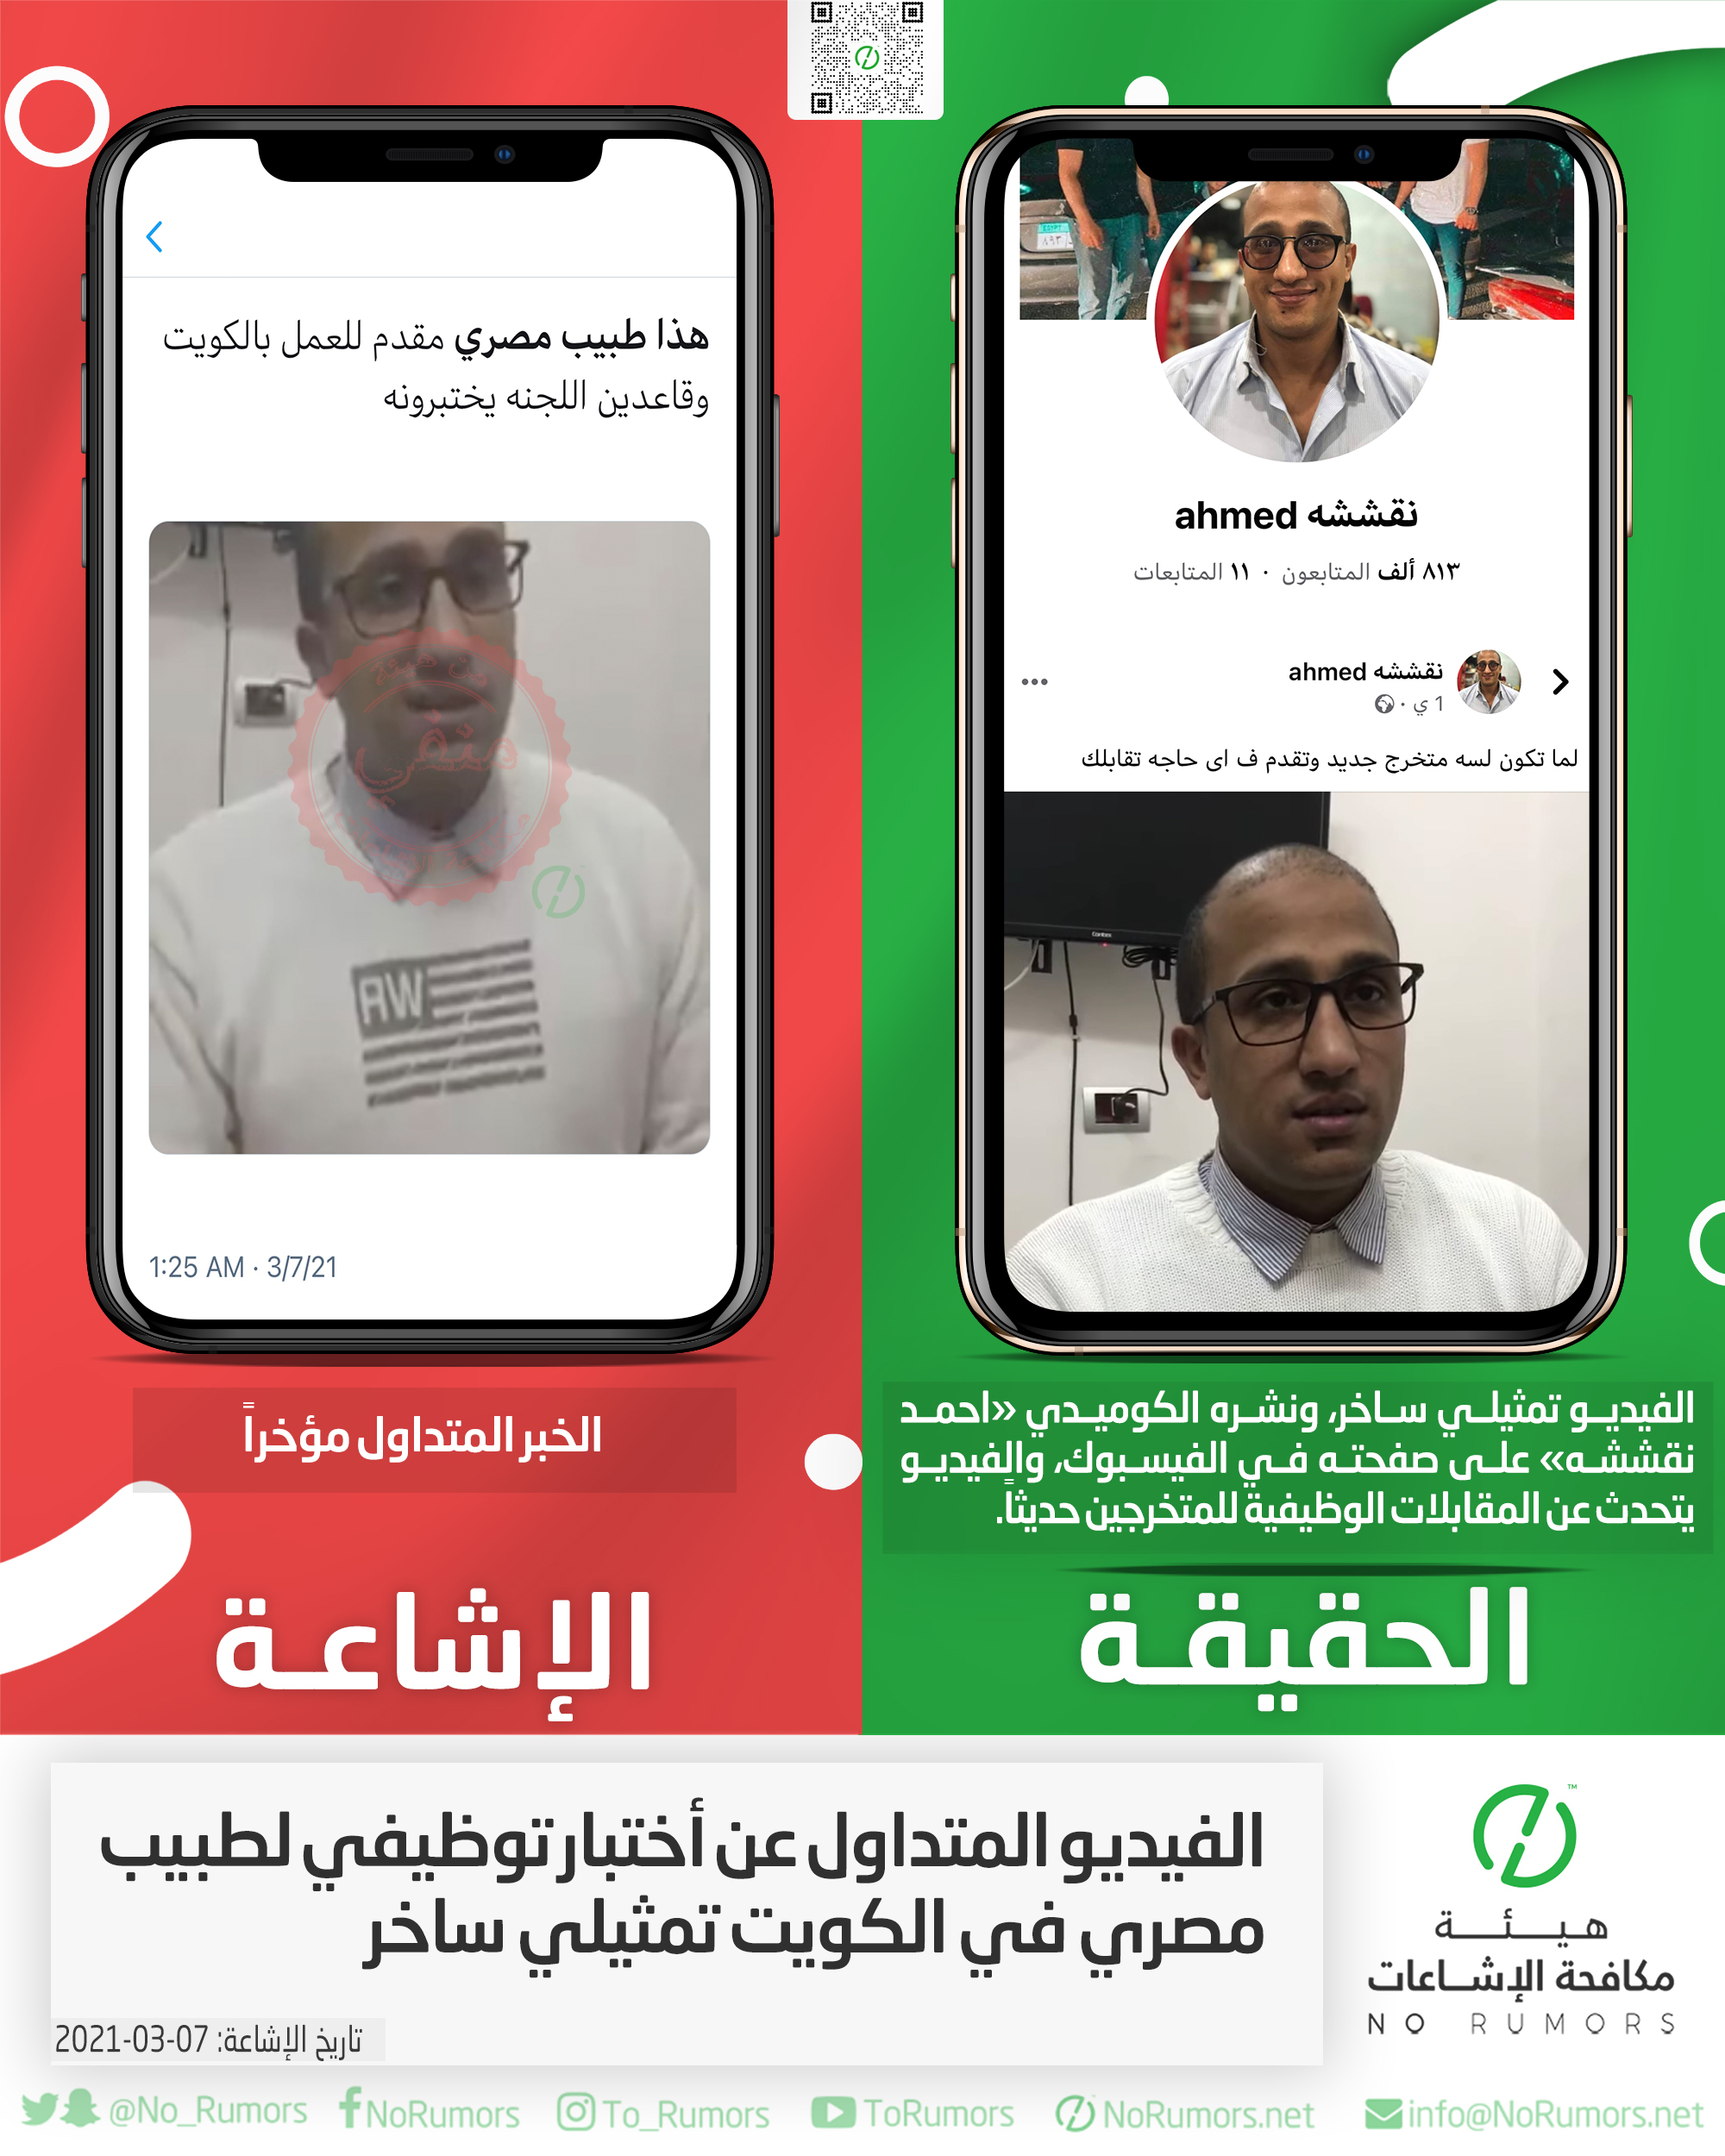 حقيقة الفيديو المتداول عن أختبار توظيفي لطبيب مصري في الكويت